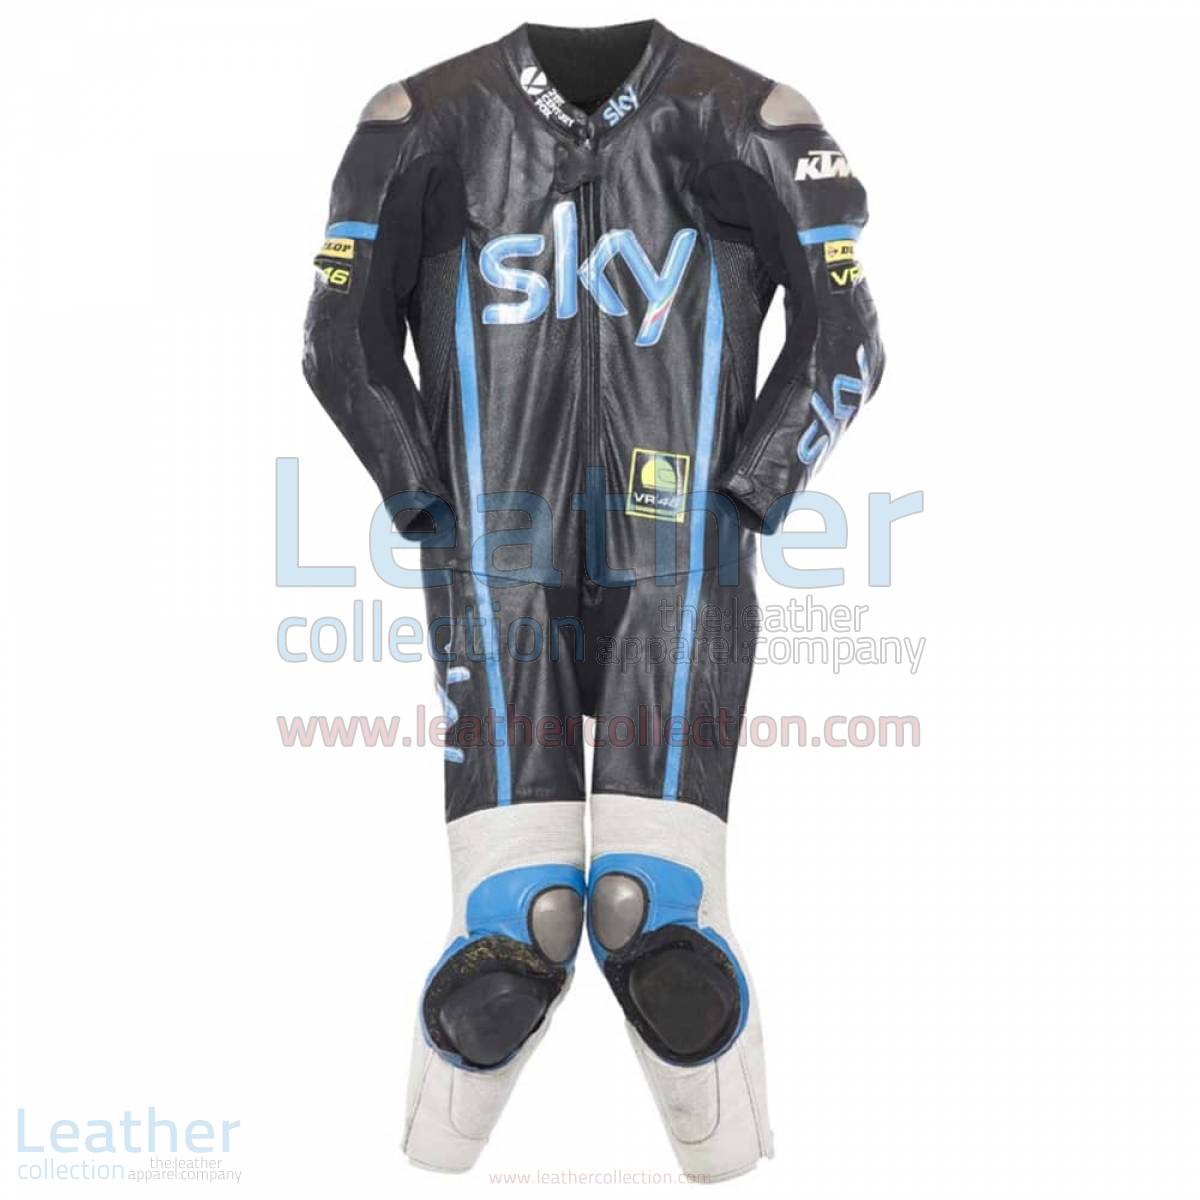 Romano Fenati KTM 2014 Race Suit